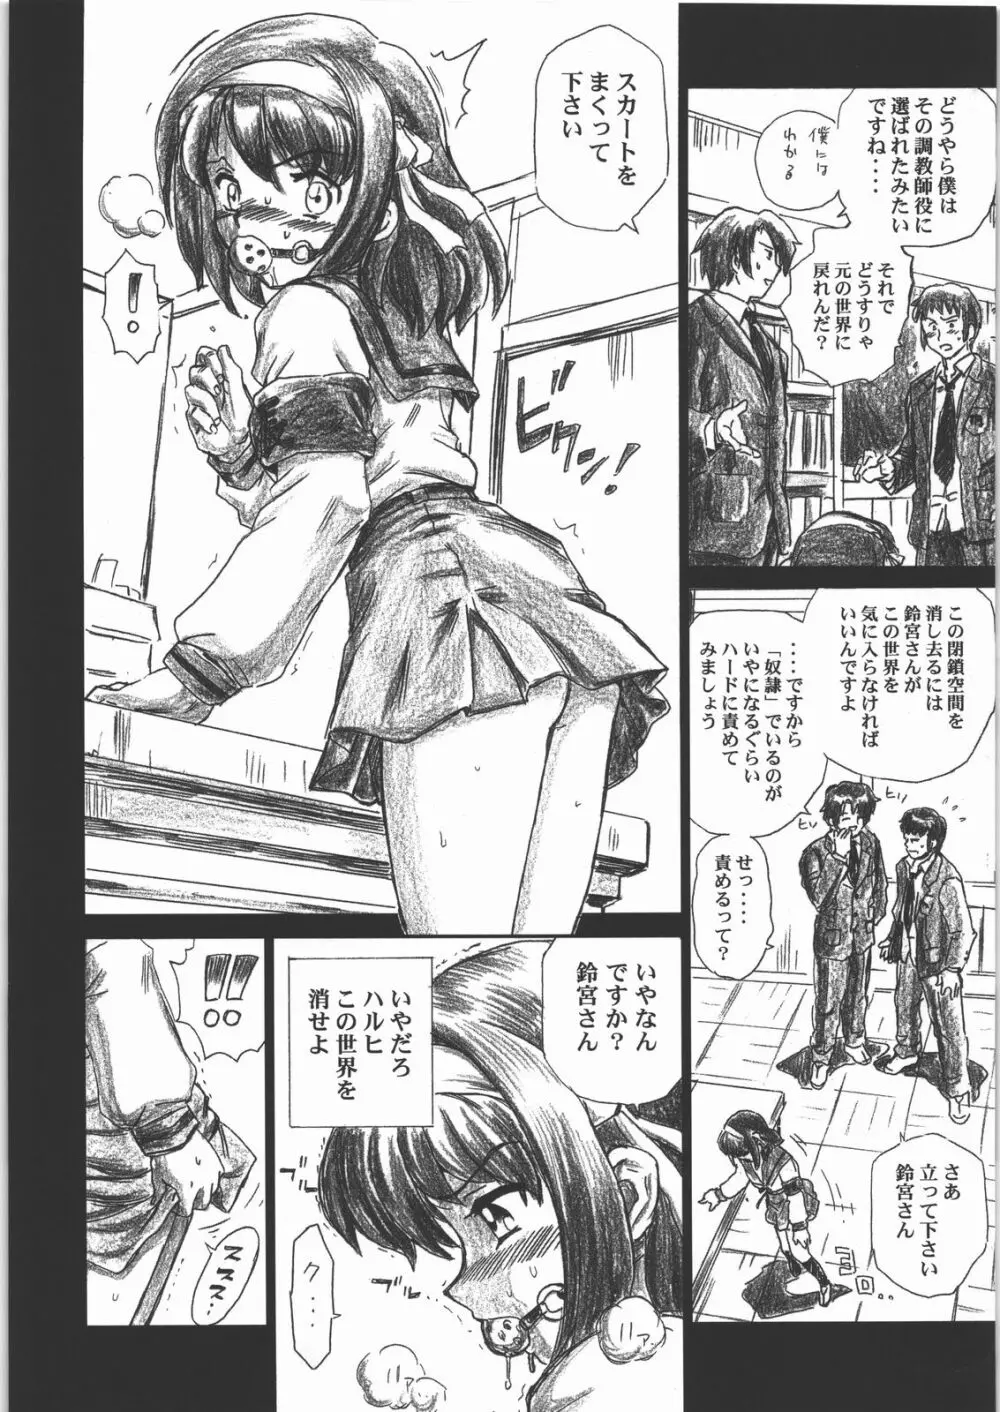 TAIL-MAN HARUHI SUZUMIYA BOOK - page5